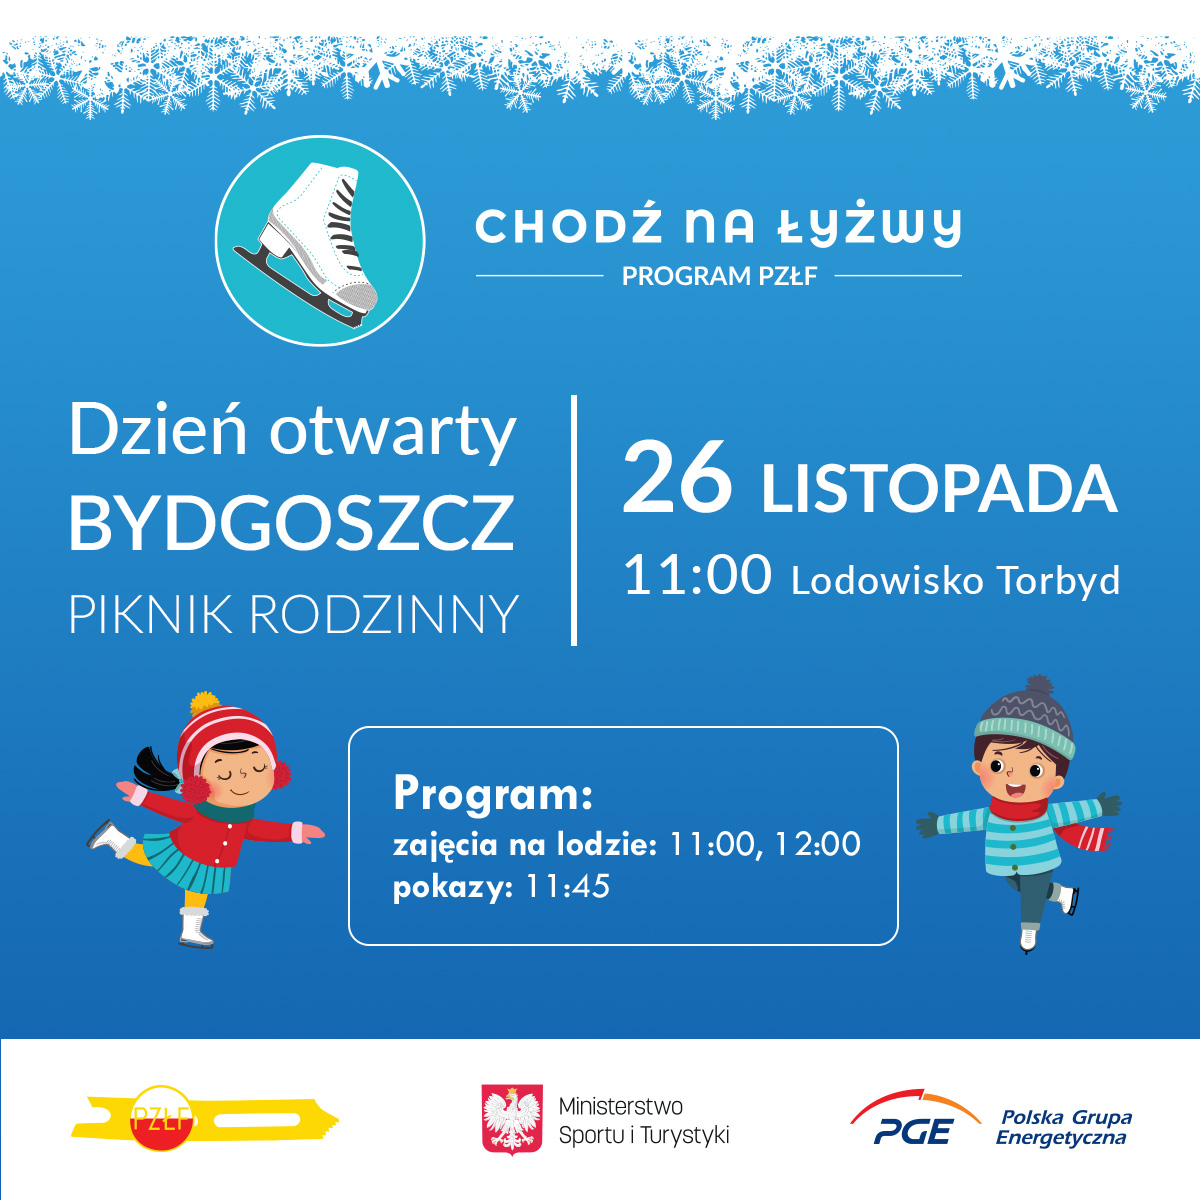 Dzień otwarty i piknik rodzinny w ramach programu „Chodź na Łyżwy” 26 listopada w Bydgoszczy